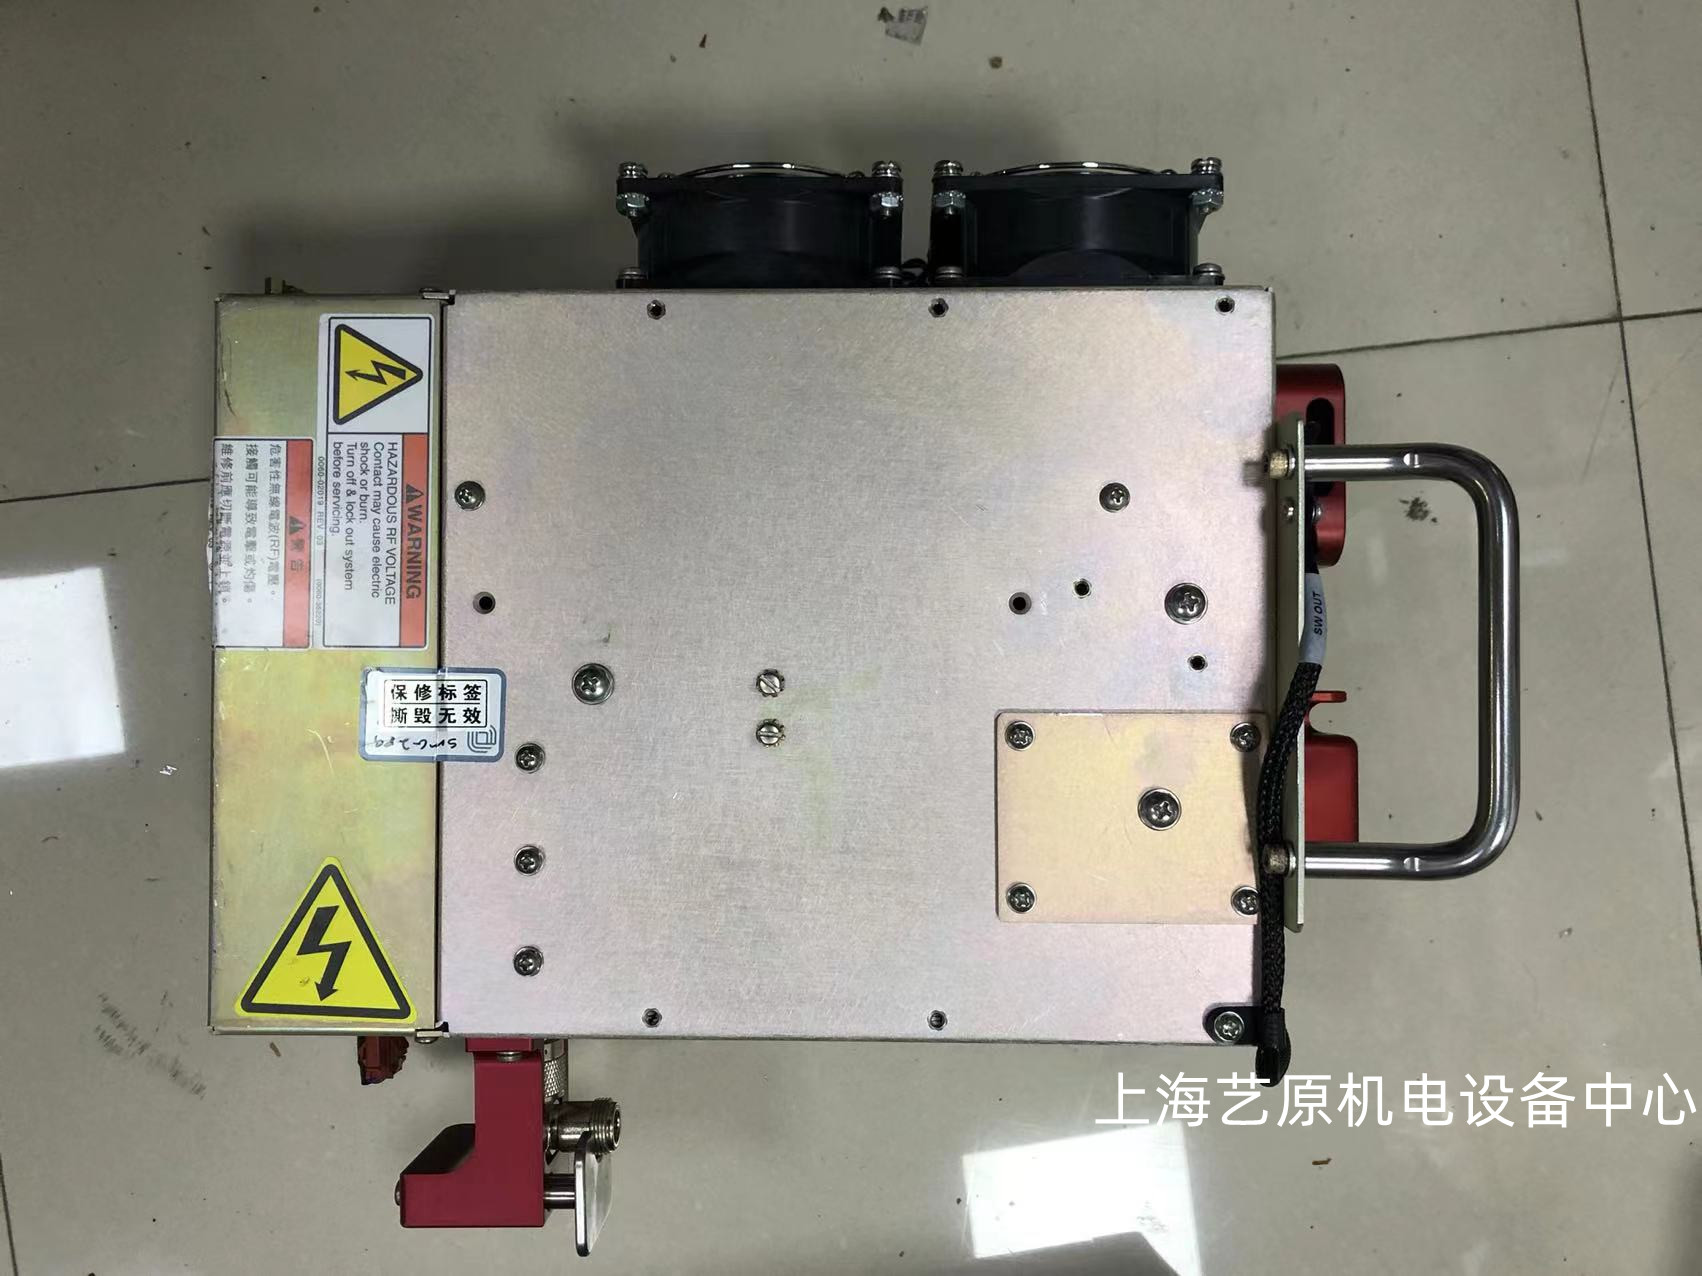 扬州RF MATCH 0010-36408维修厂家 RF 匹配器 维修工程师